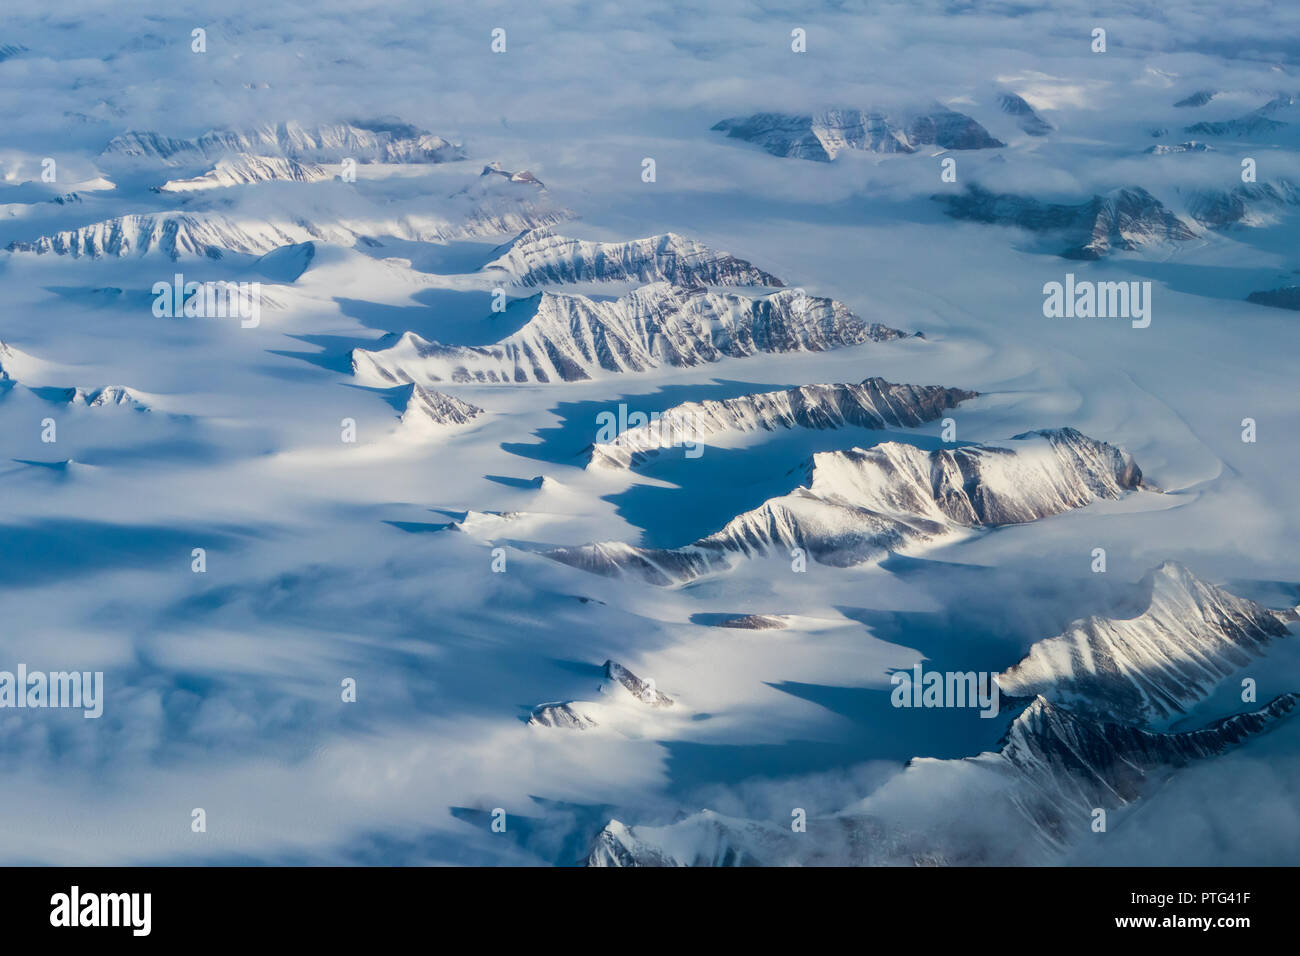 Les pics du Groenland projettent de grandes ombres sur la neige. Banque D'Images